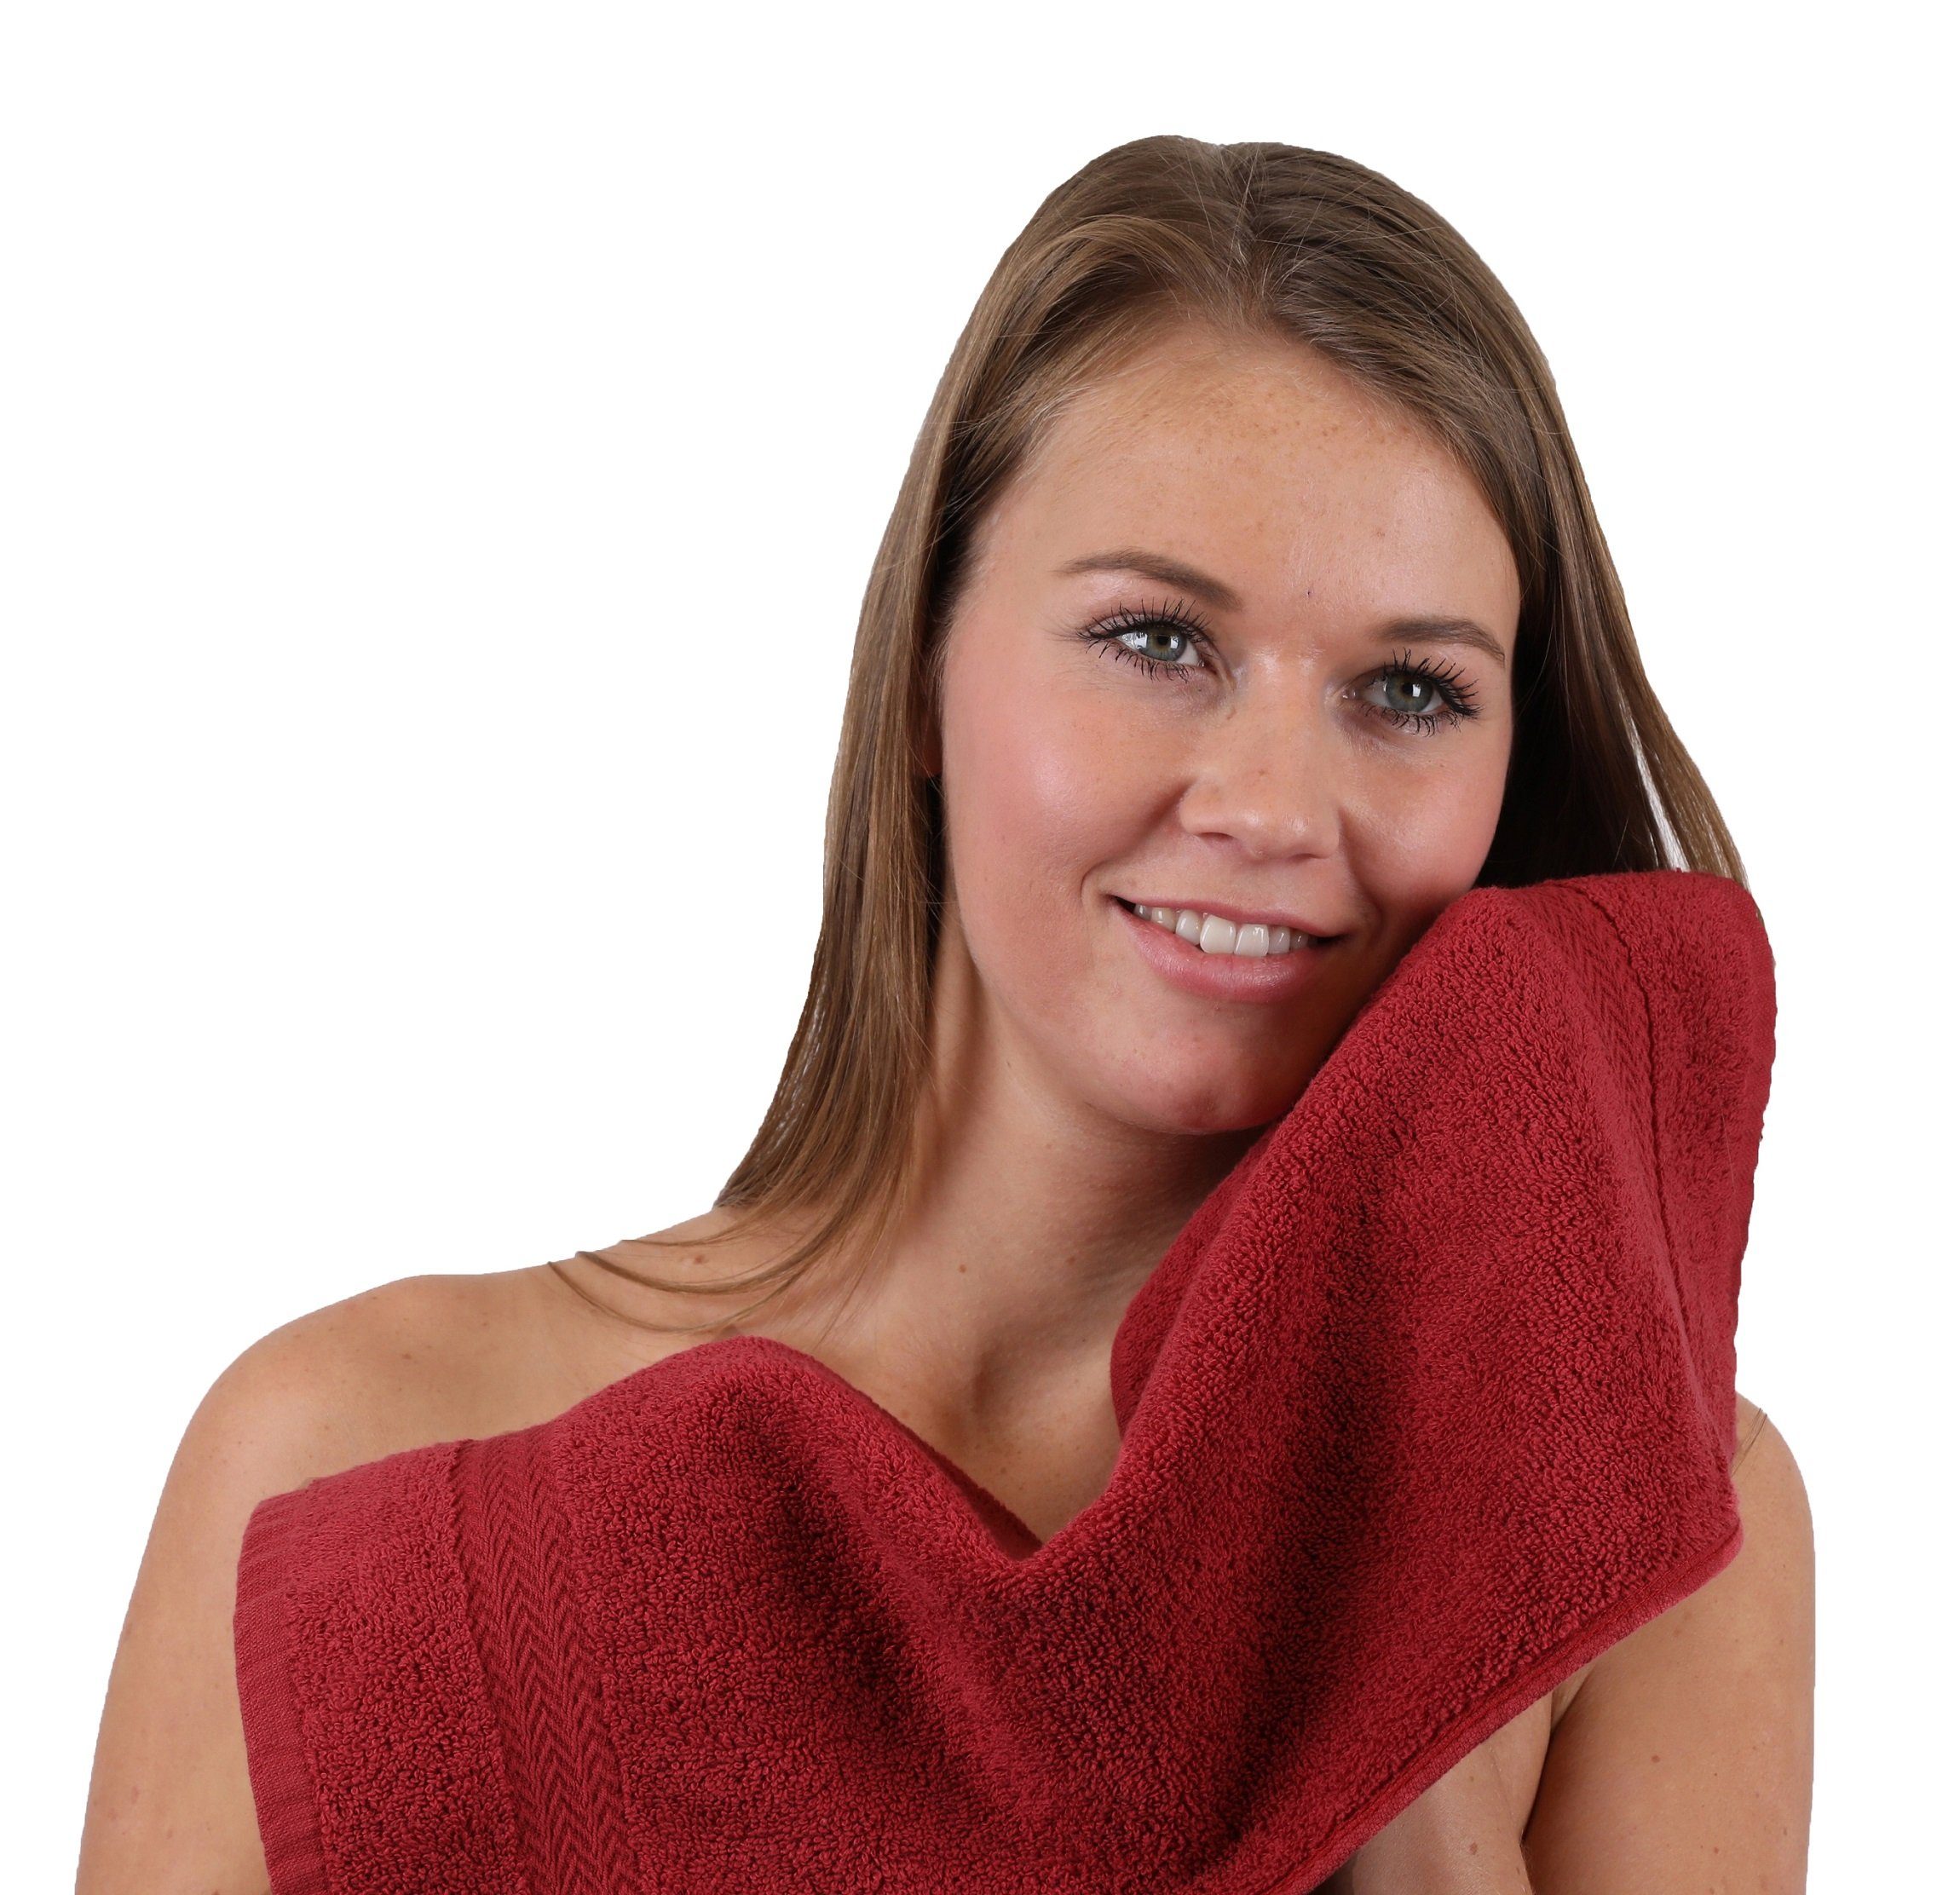 Handtuch Set Betz (10-tlg) Baumwolle, & 100% 10-TLG. Handtuch-Set Farbe Premium Smaragdgrün, Dunkelrot